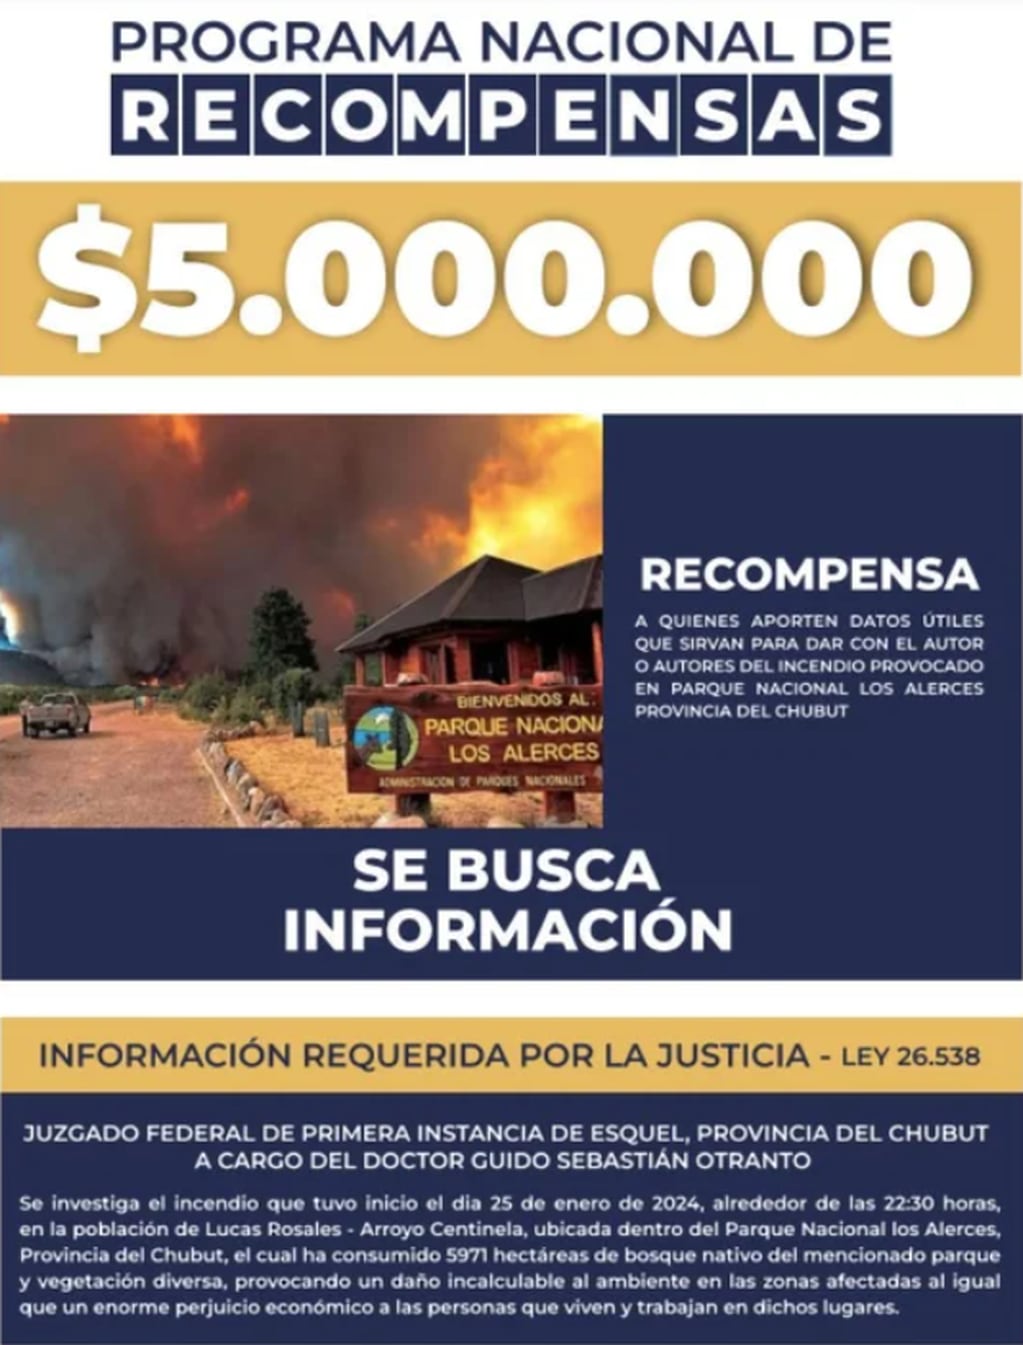 El Gobierno dará una millonaria recompensa a quiénes aporten datos del incendio en el Parque Nacional Los Alerces.